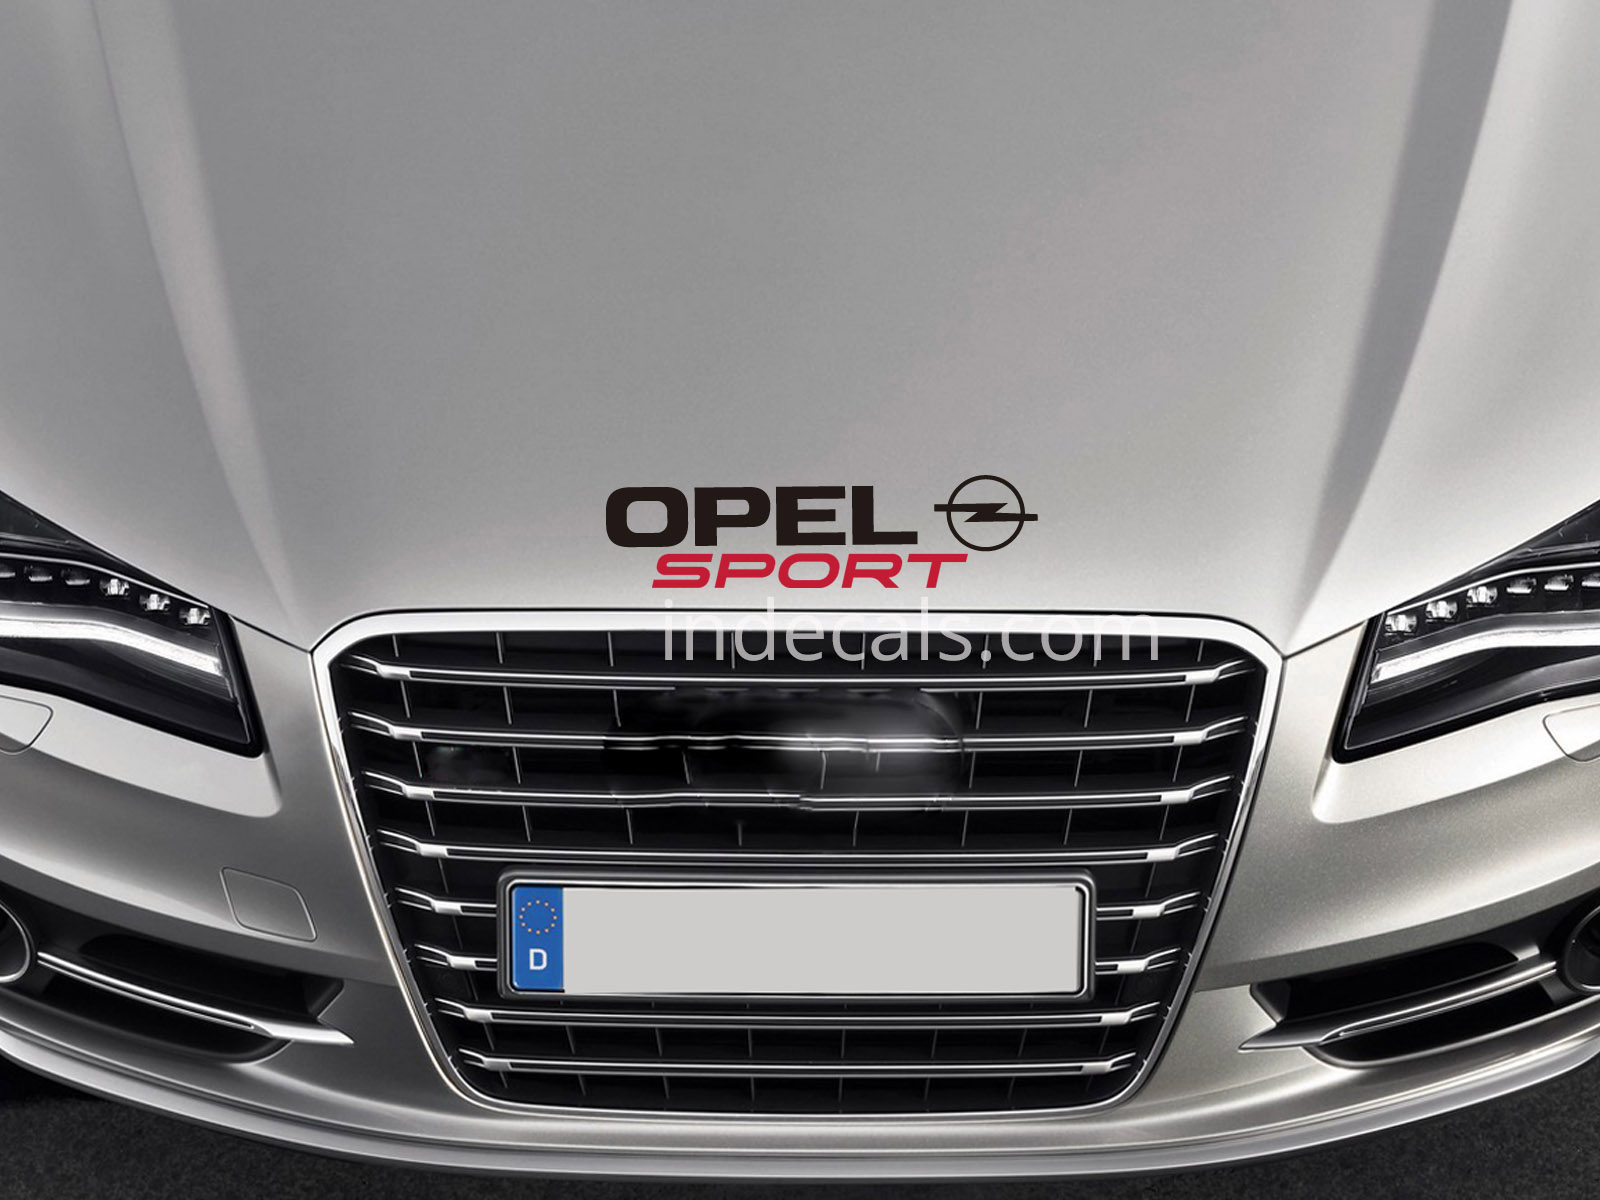 1 x Opel Sport Sticker for Bonnet - Black & Red